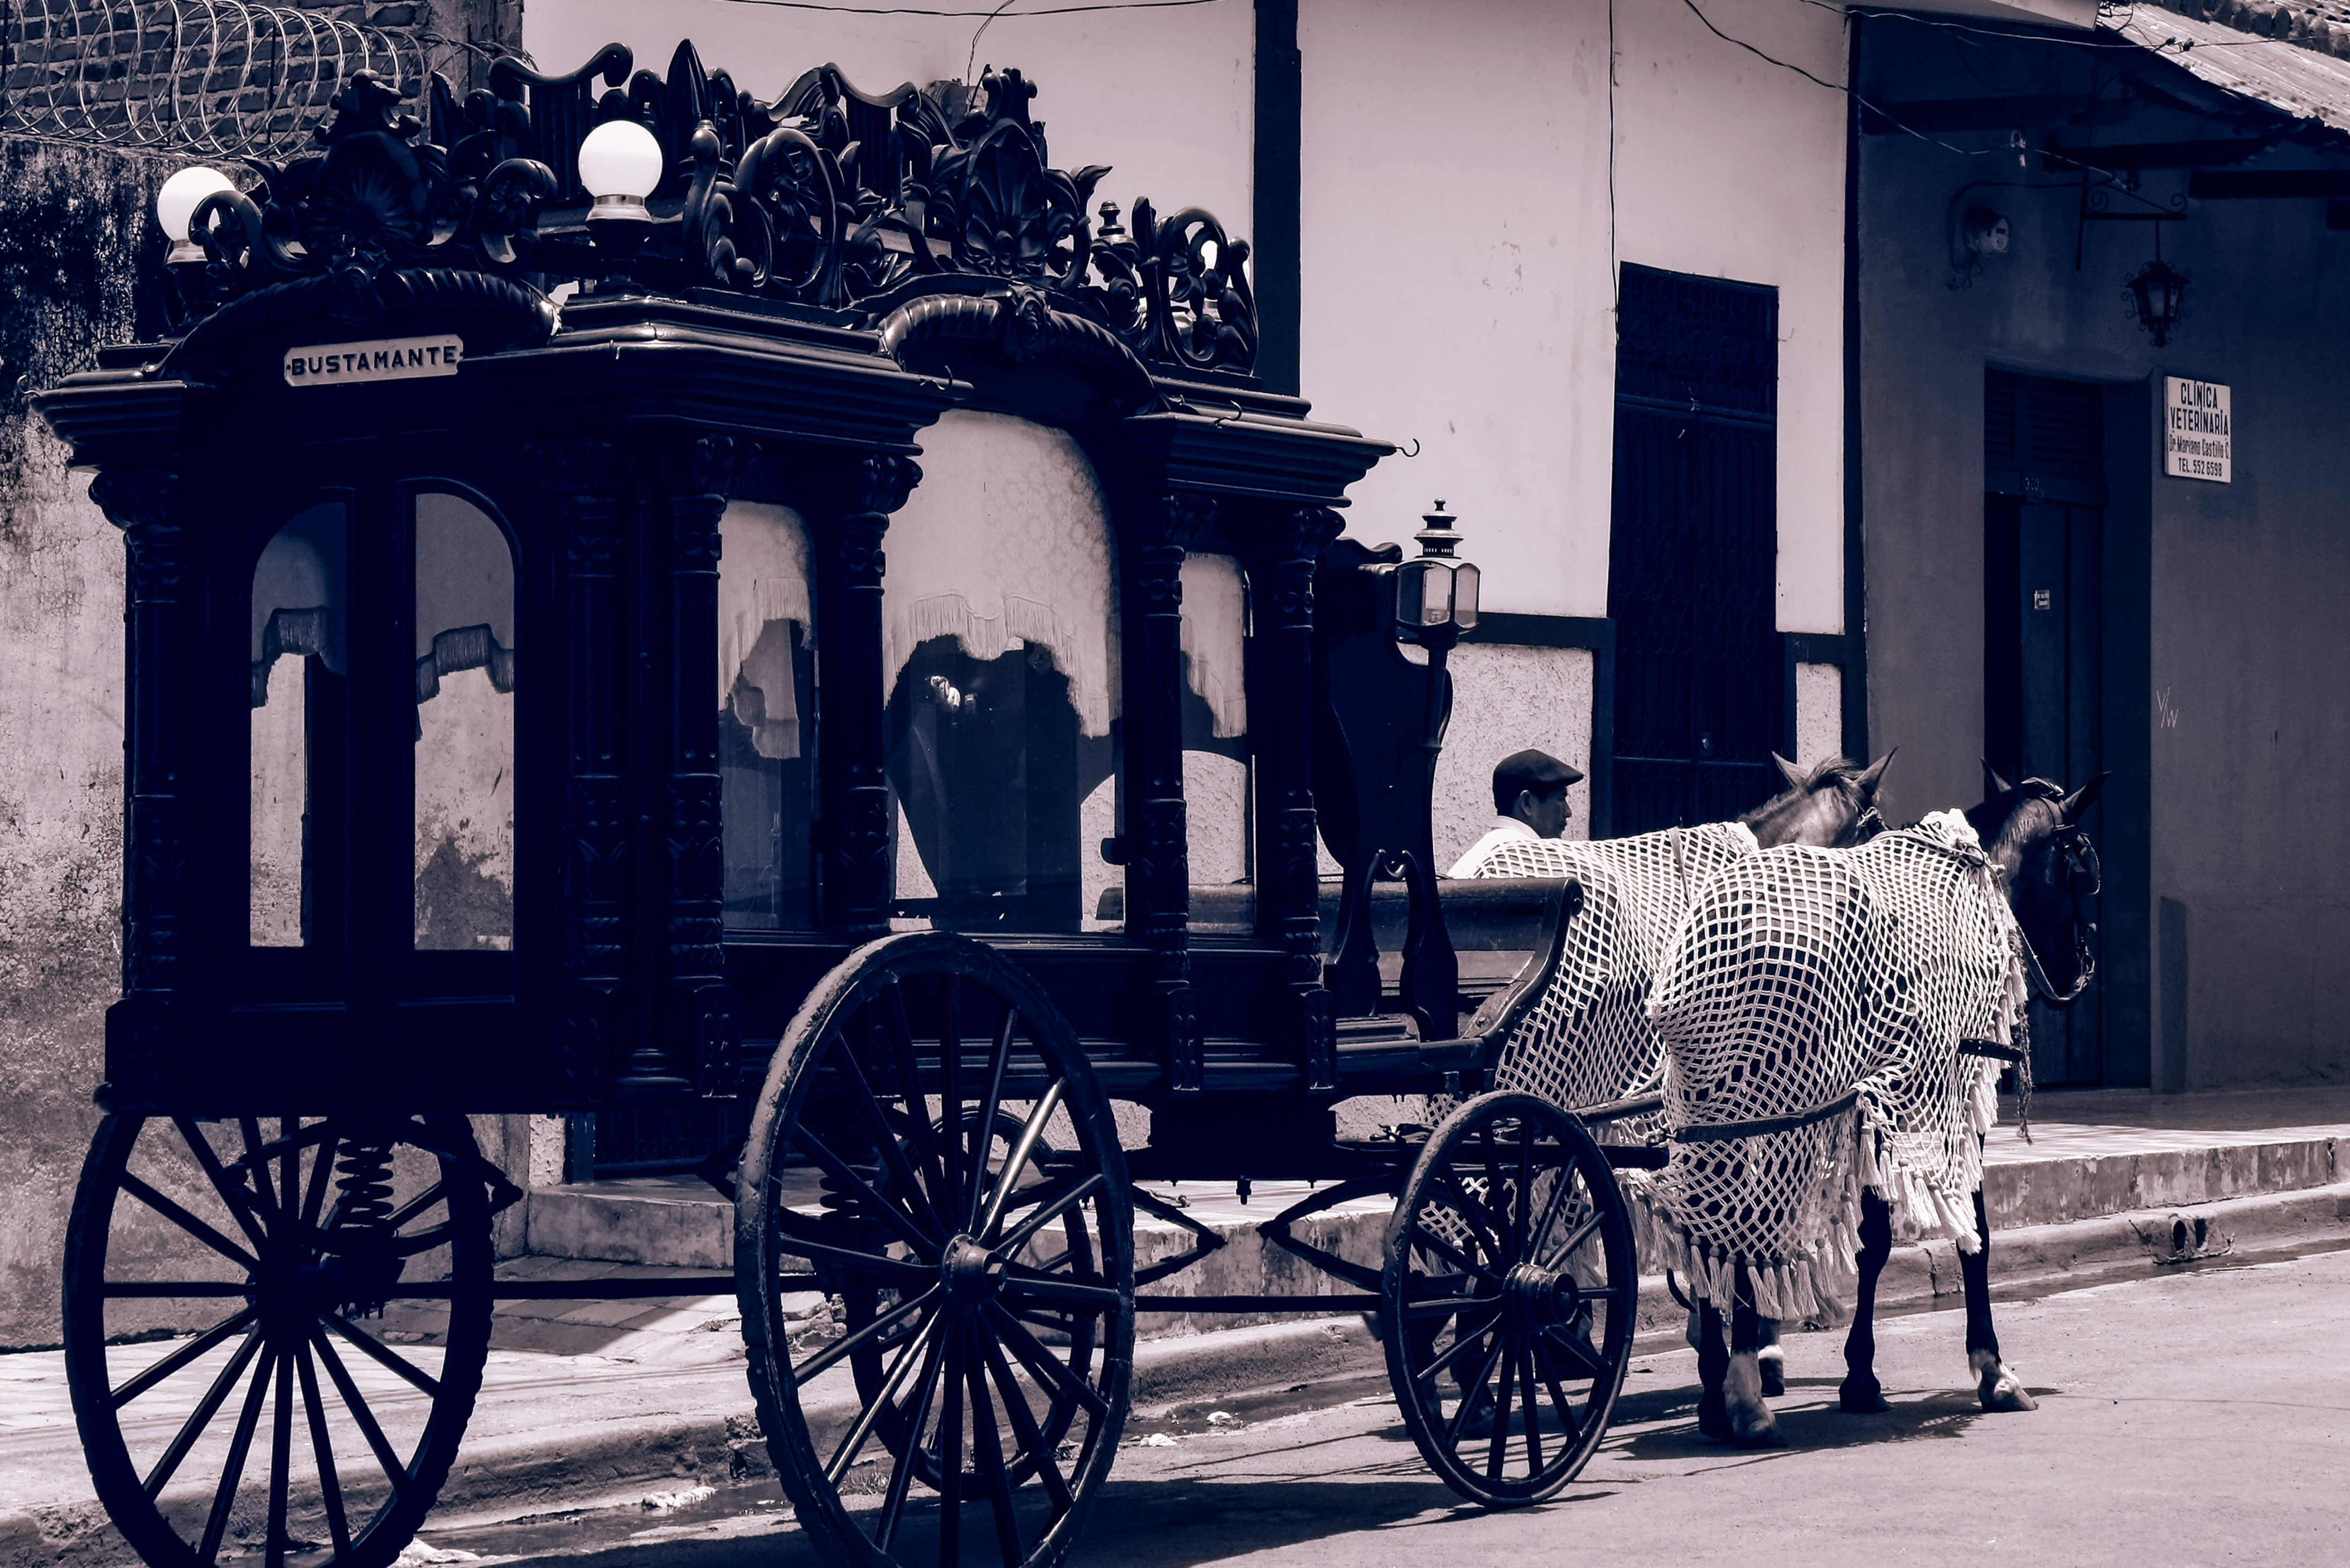 La carroza fúnebre Calles de granada, Granada, Nicaragua